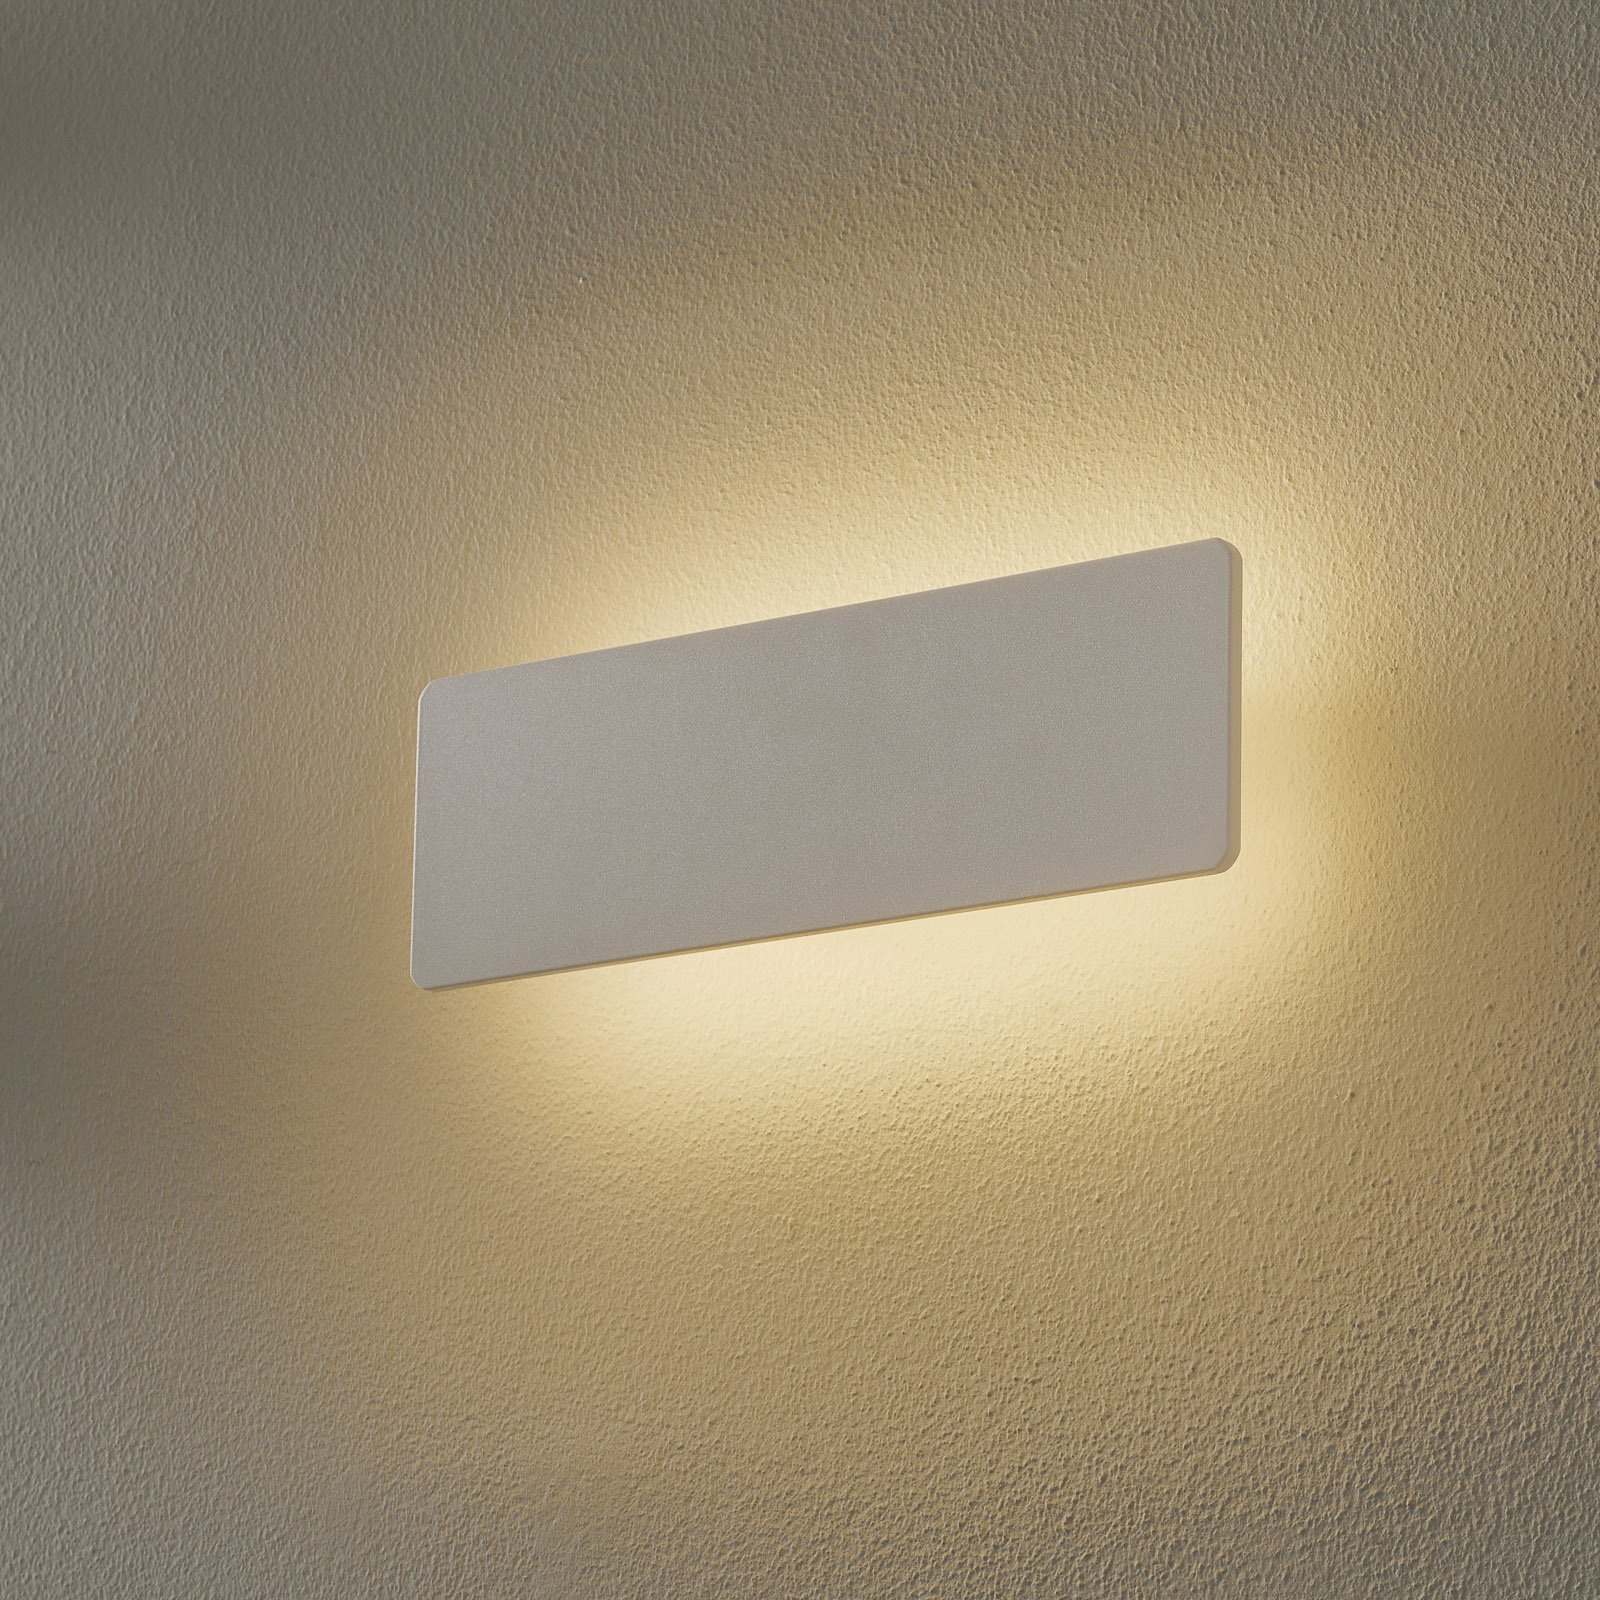 LED-Wandleuchte Zig Zag weiß, Breite 29 cm